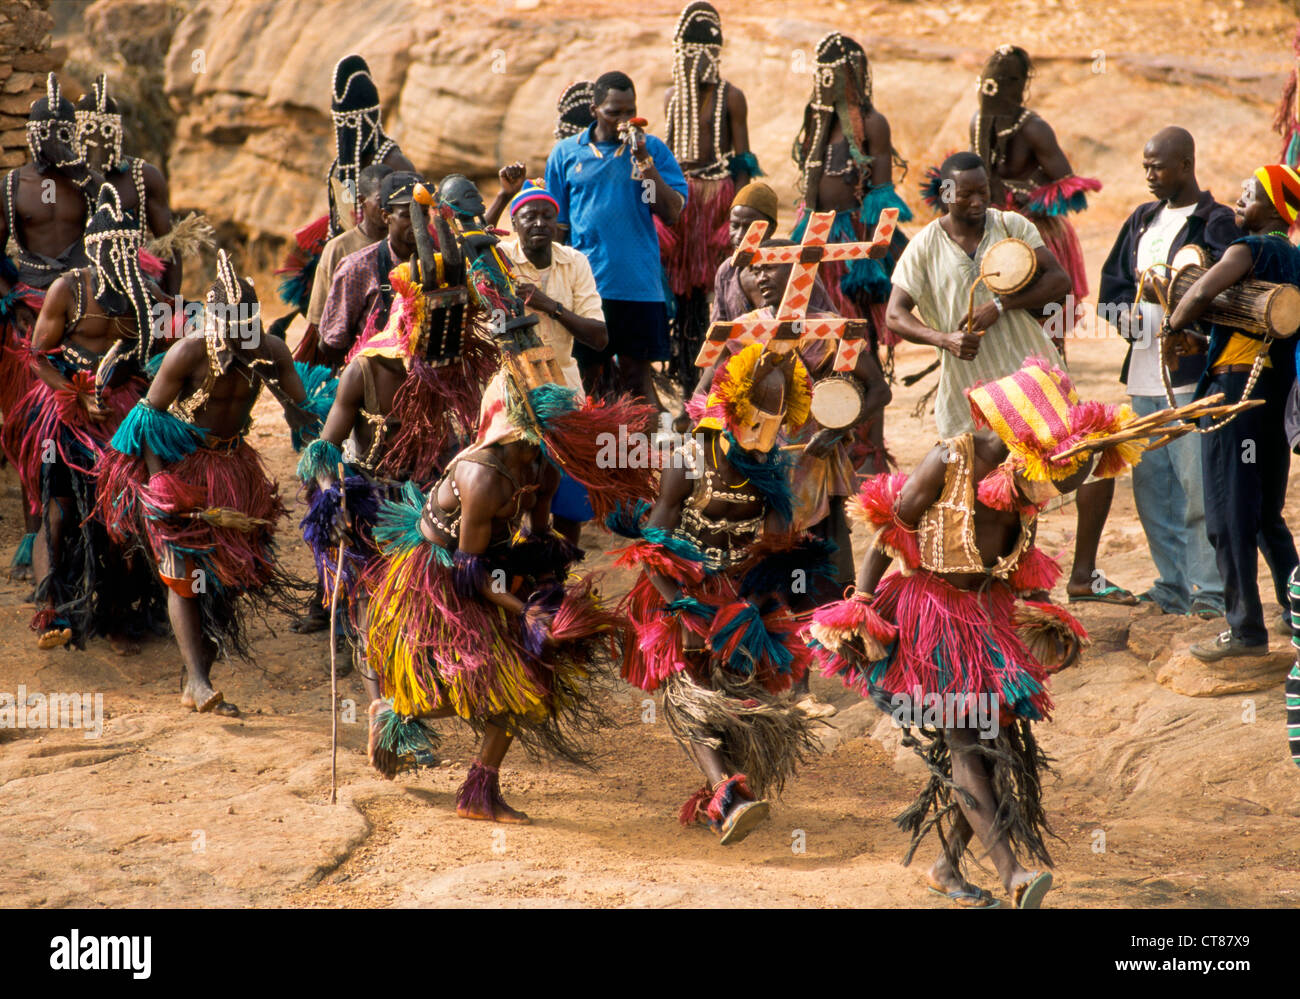 Begnimato, Mali ; danseurs masqués dans la Dama rituel des funérailles Banque D'Images